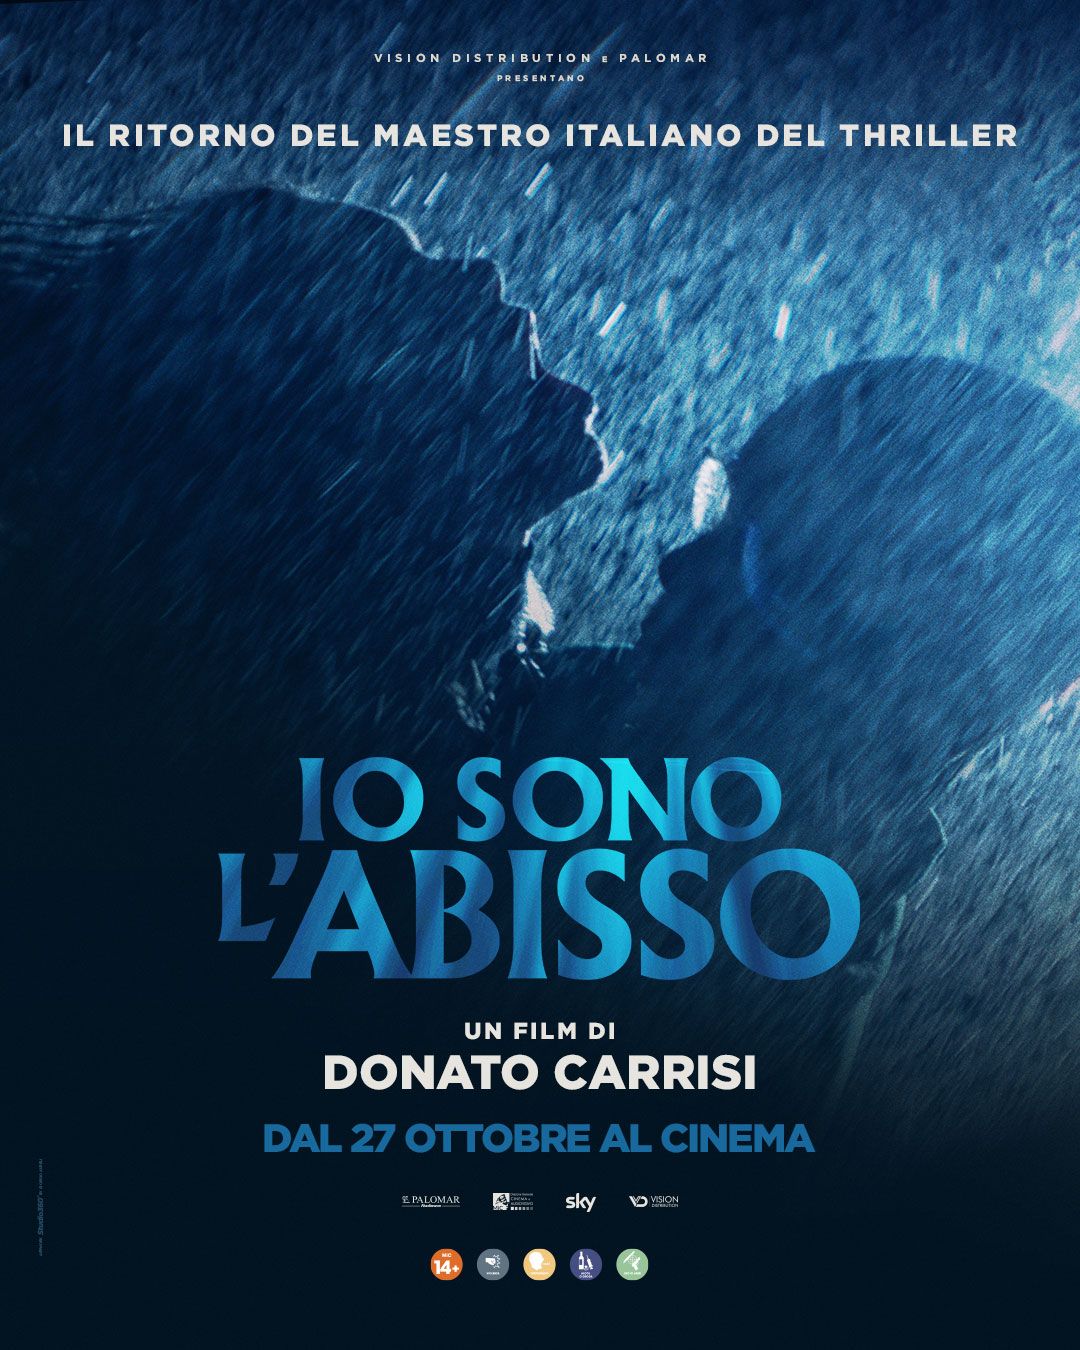 Donato Carrisi: Ho girato un film «senza attori», per raccontare come nasce la paura…- immagine 3